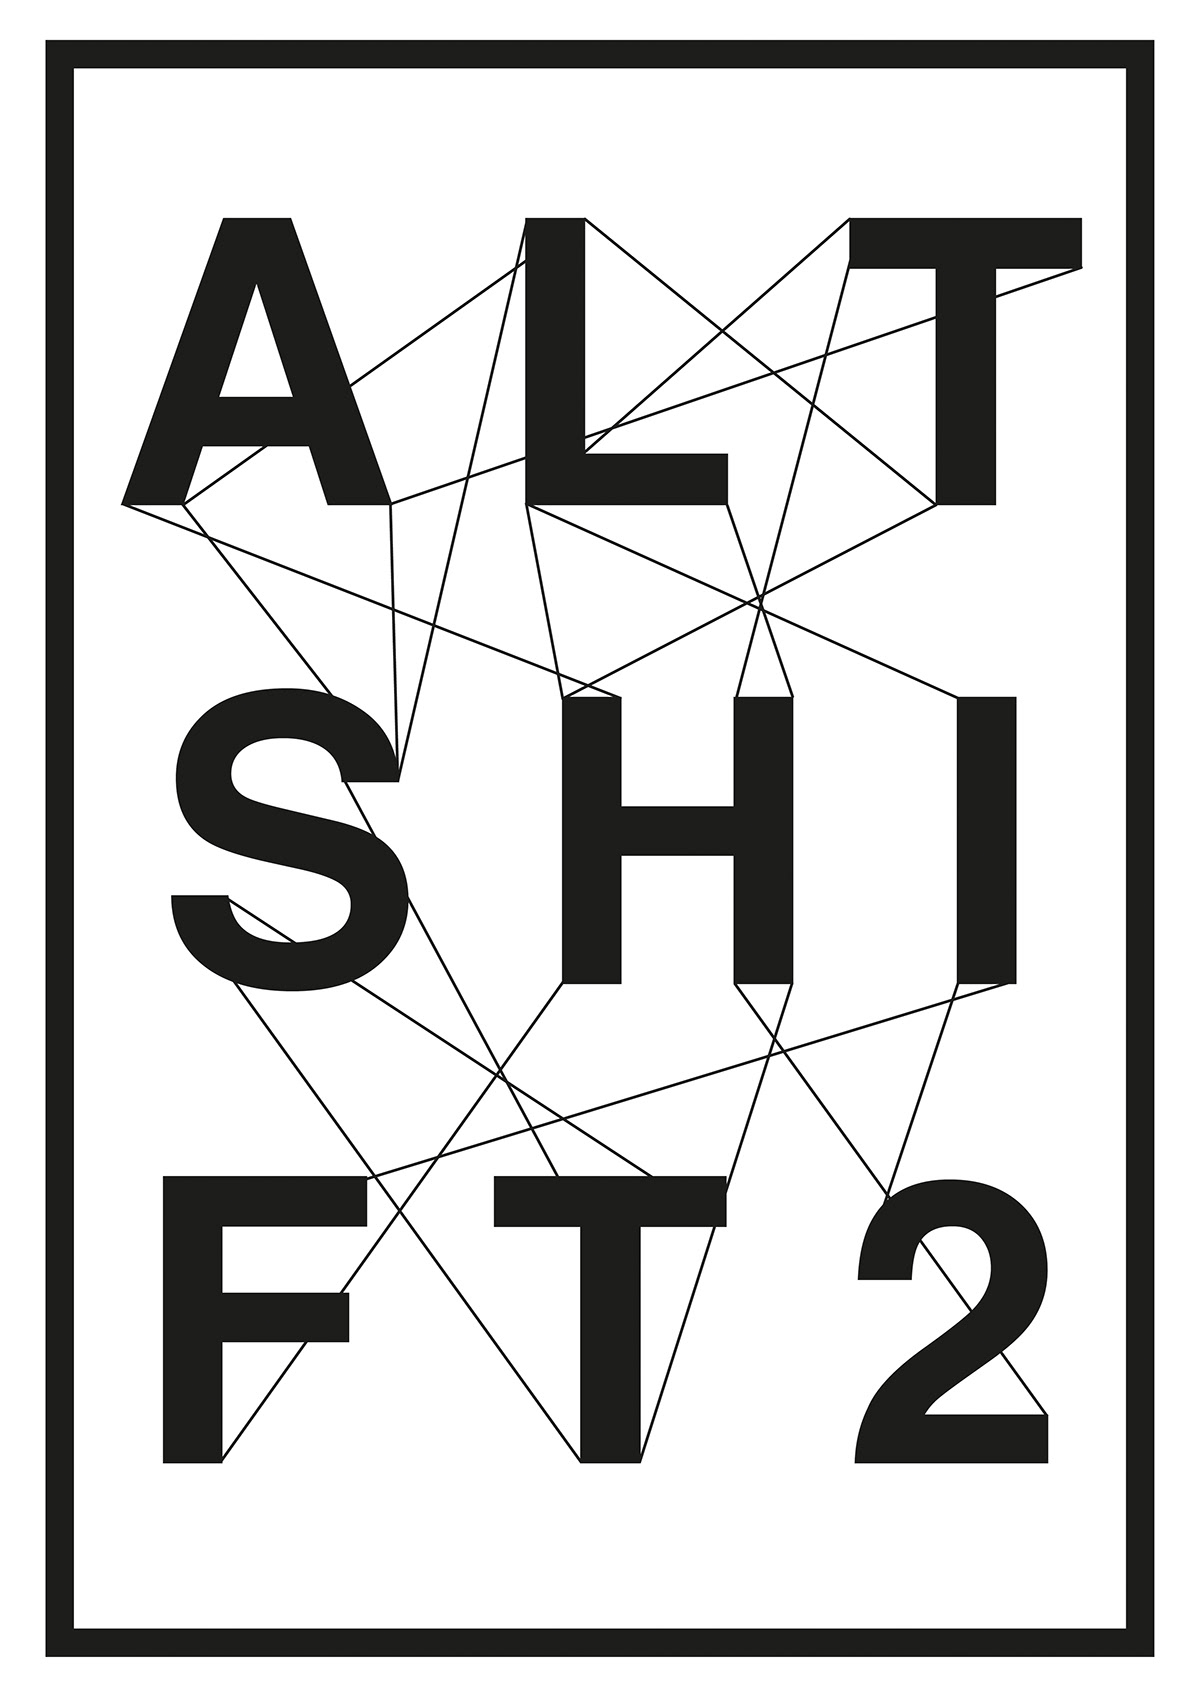 AltShift2